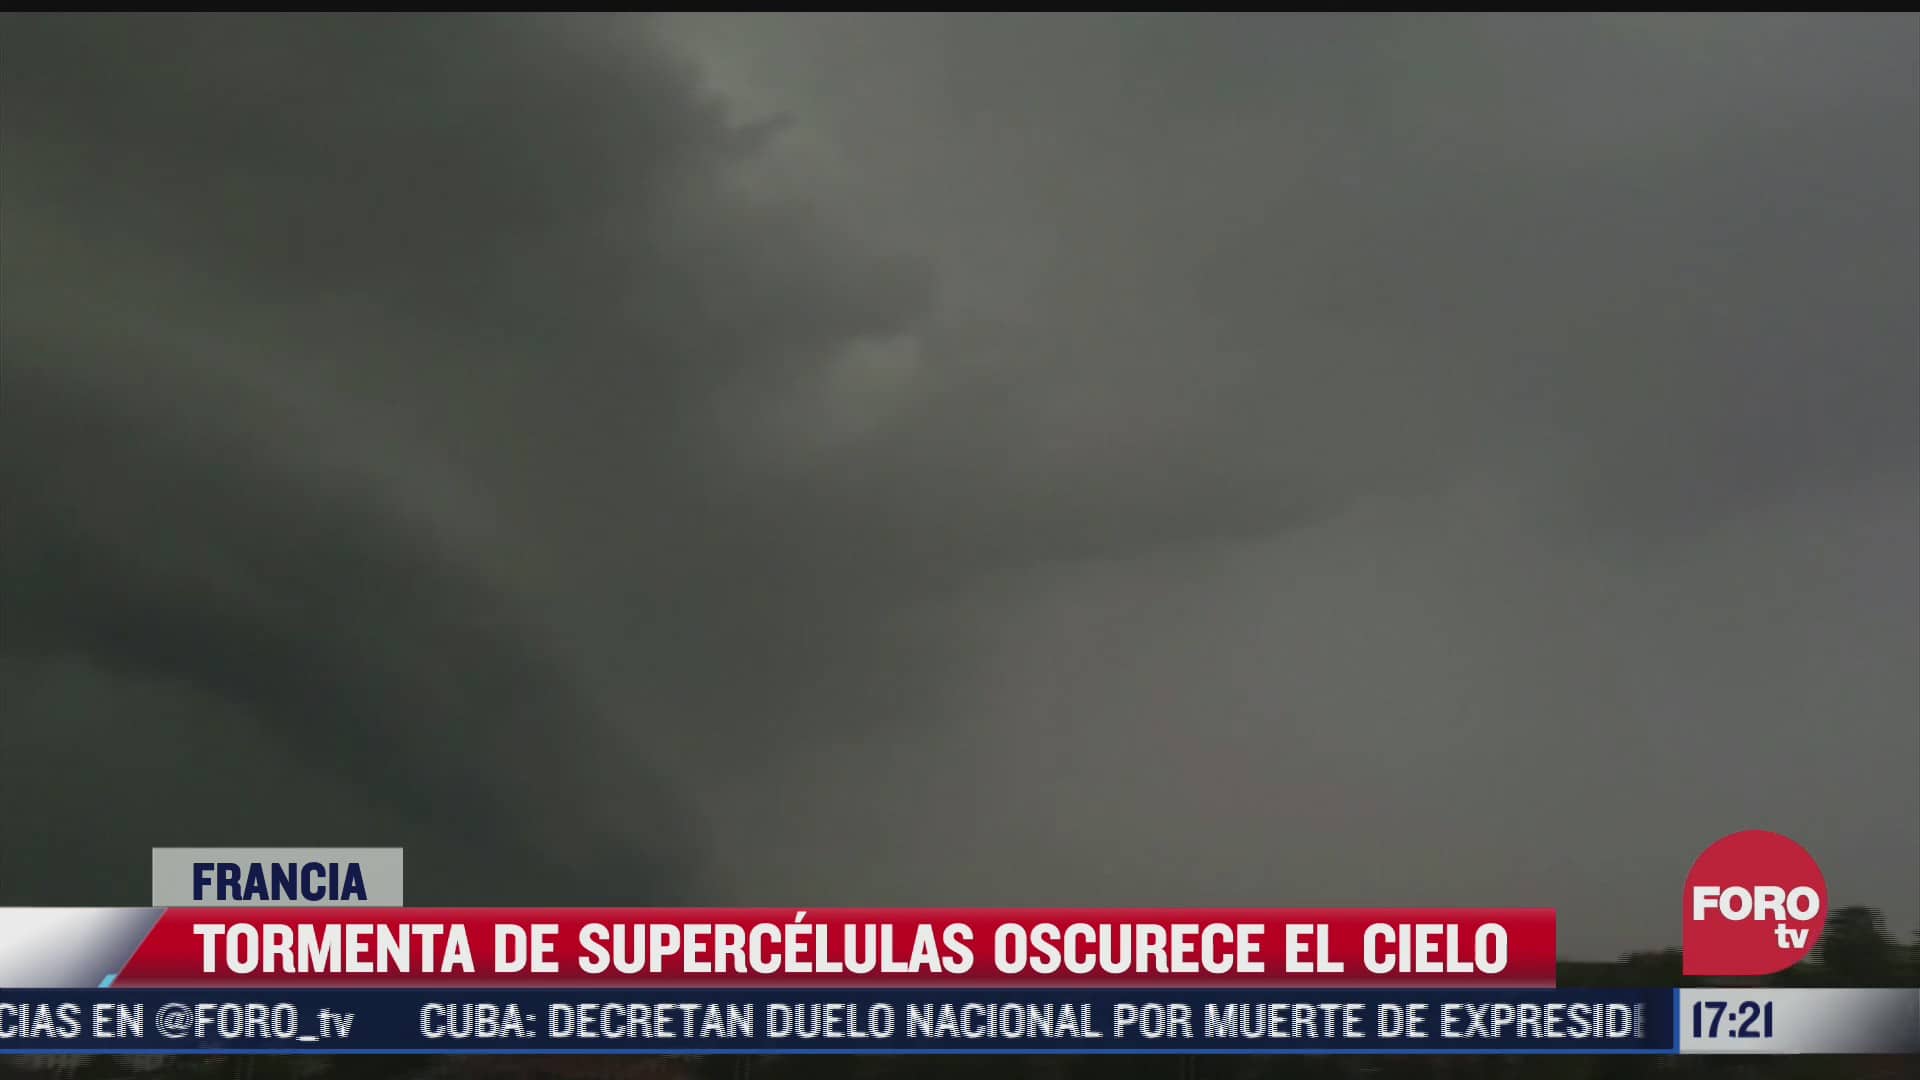 tormenta de supercelulas oscurece el cielo en francia